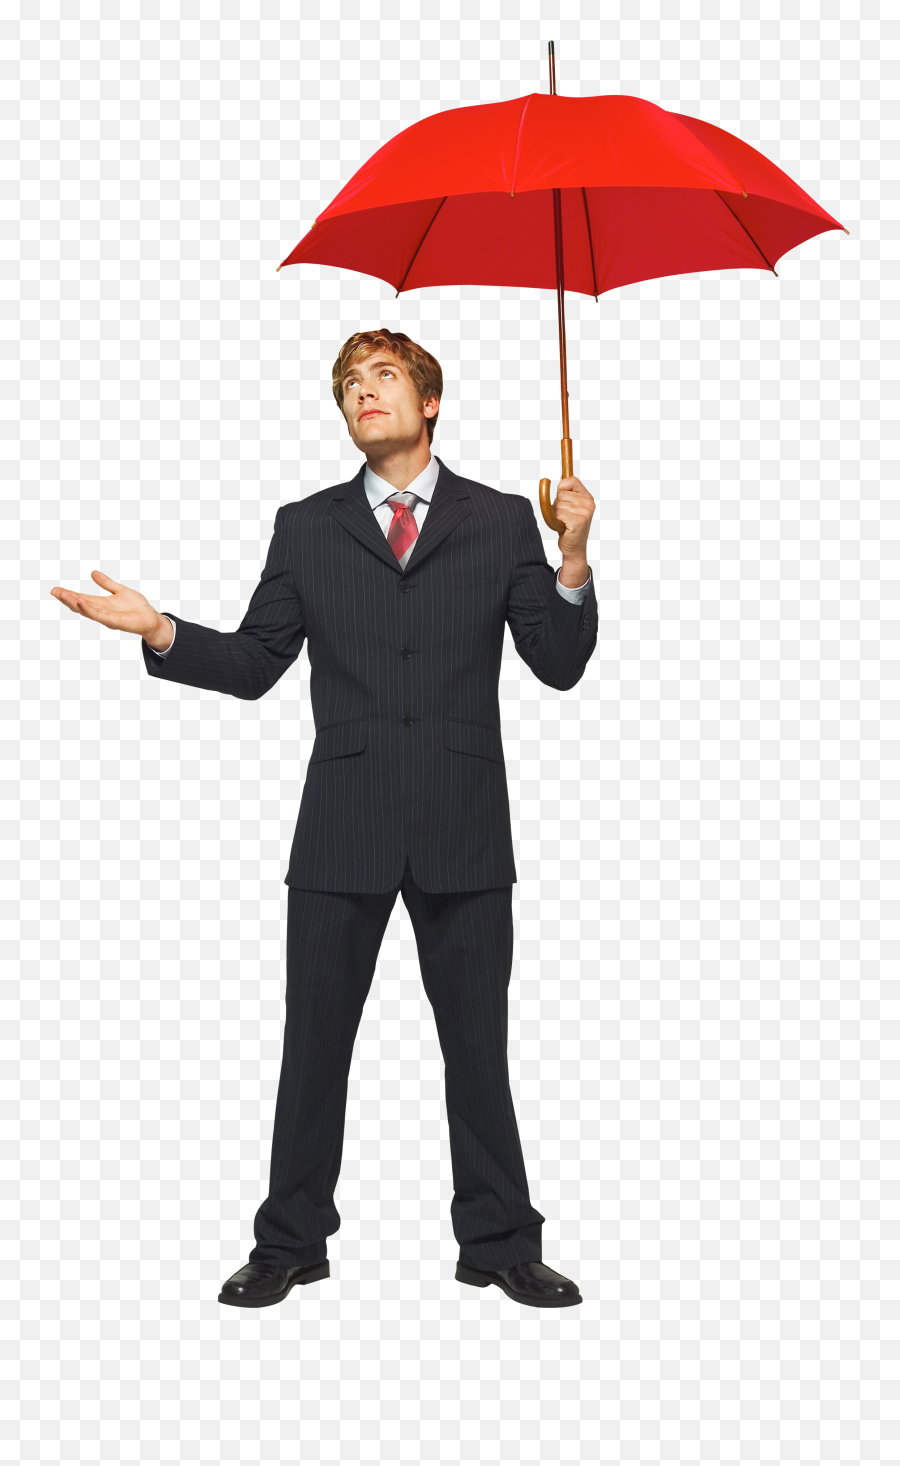 Businessman Umbrella Png Image - Person With Umbrella Transparent Background Emoji,Umbrella Png